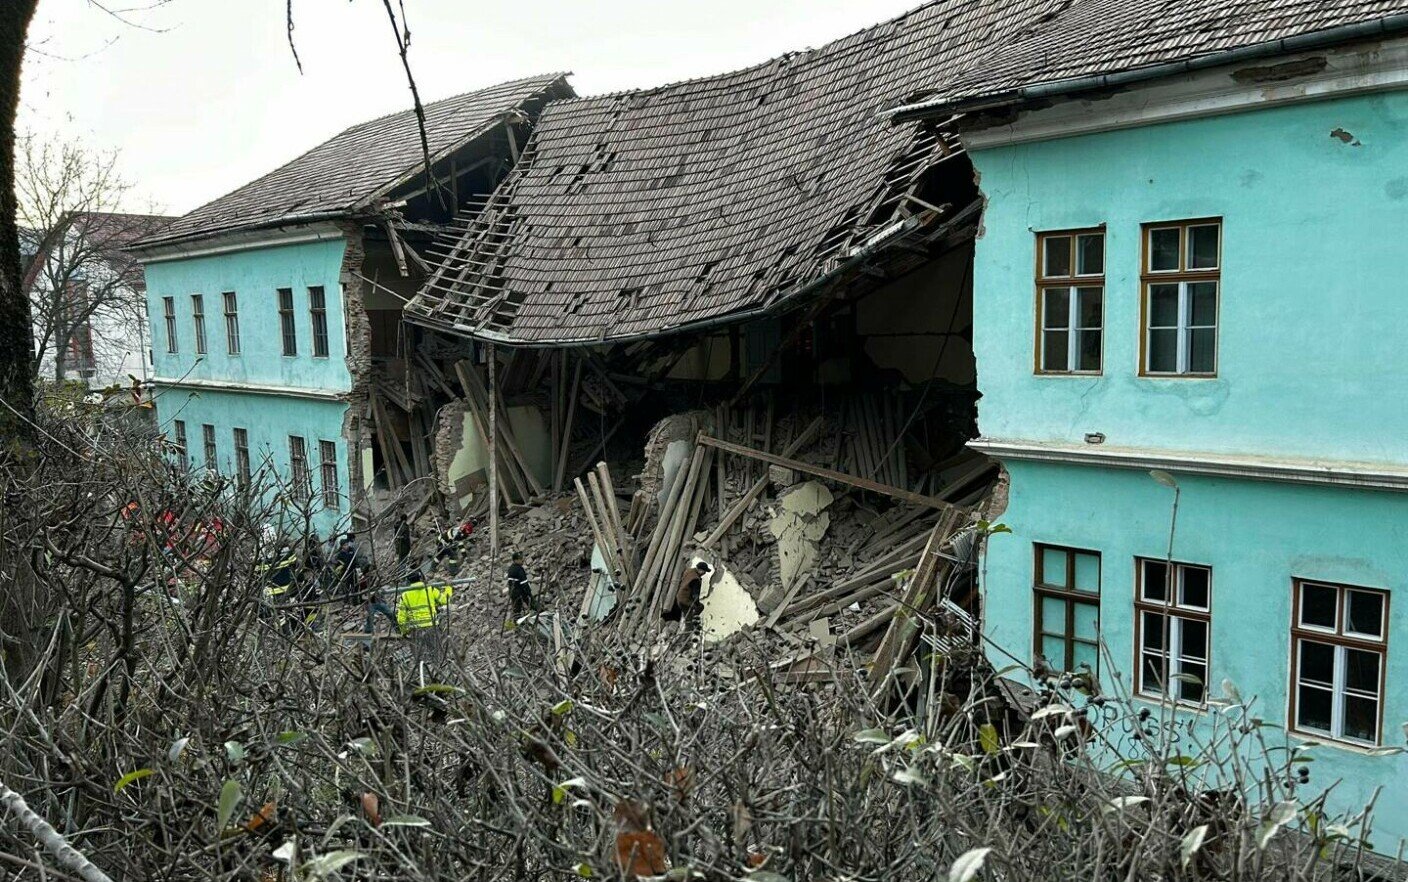  Un perete al unui internat din Odorheiul Secuiesc s-a prăbușit peste patru adolescenți. O victimă este în stare gravă